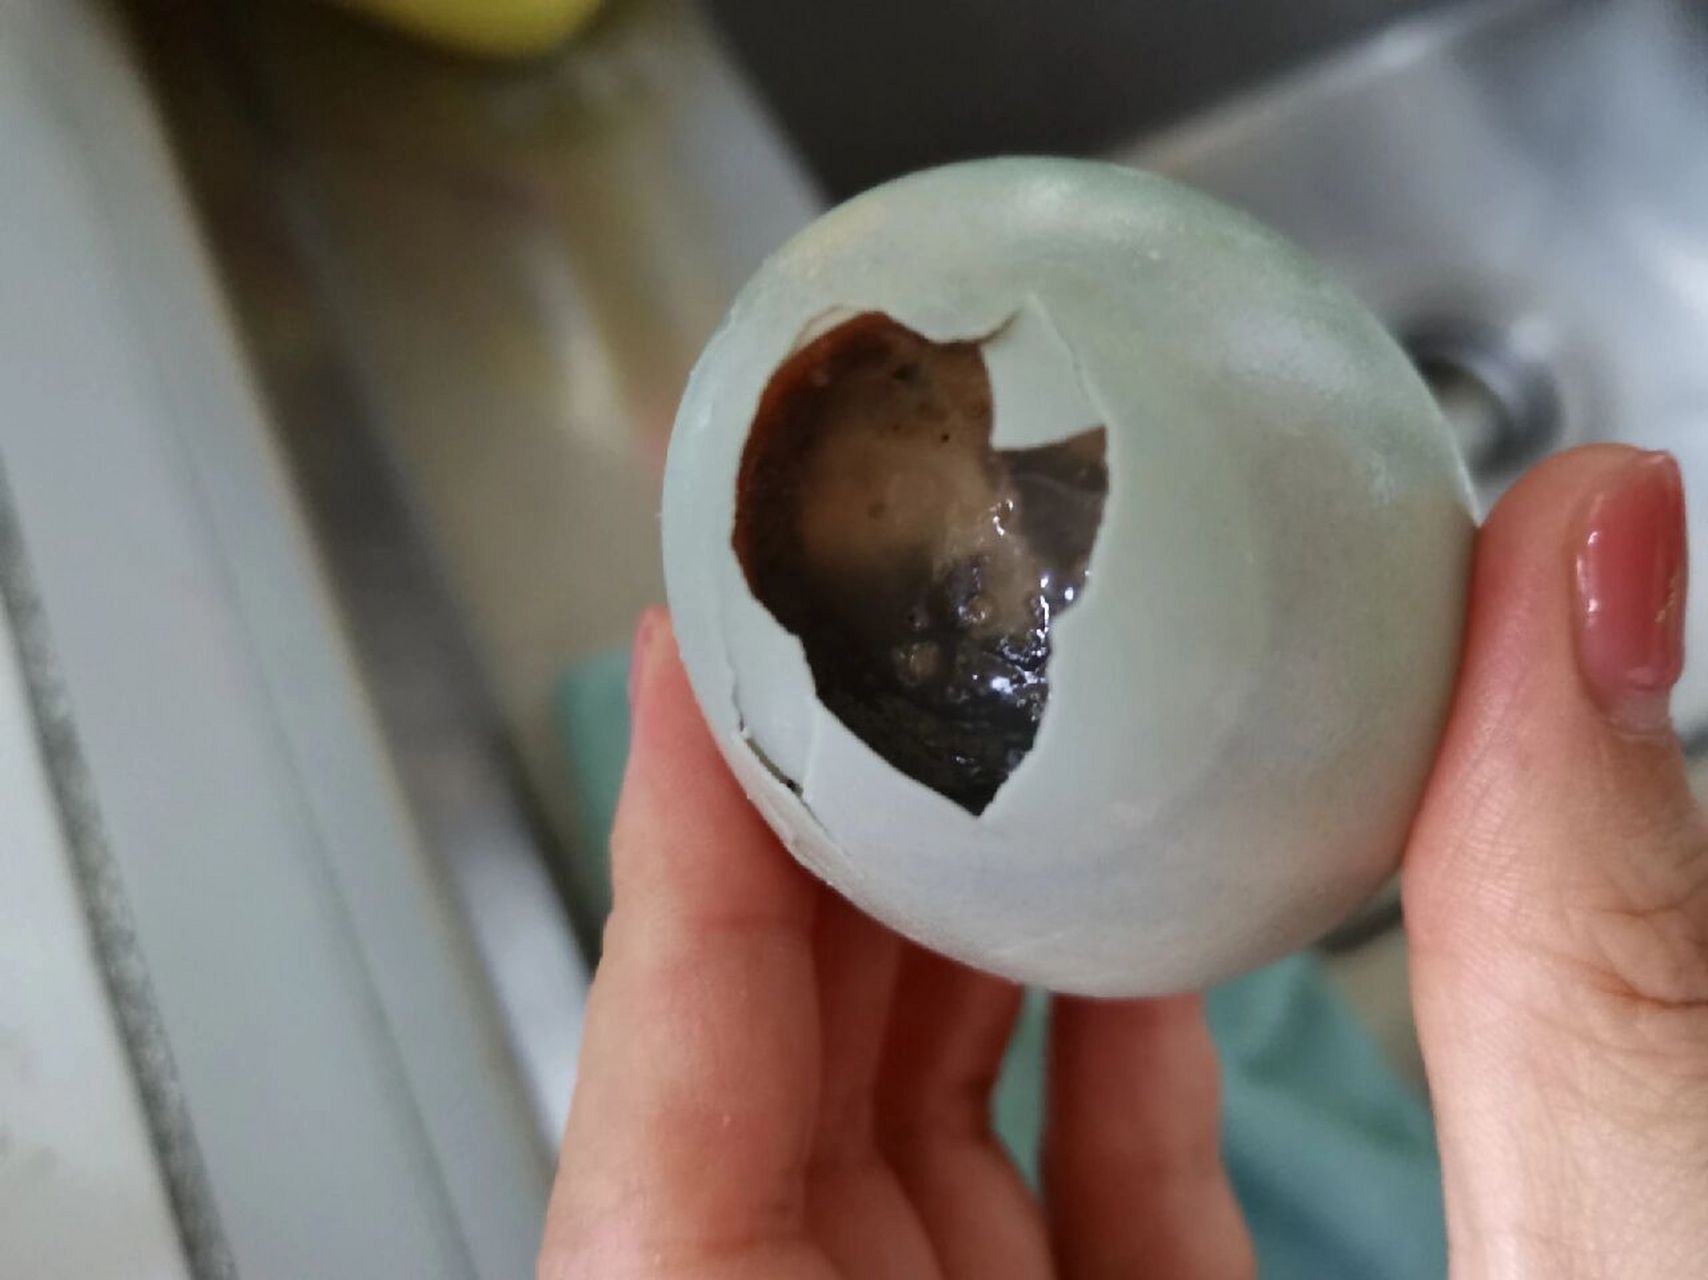 原来坏了的咸鸭蛋真的能把人臭晕啊 冰箱里放了几个不知道多久的咸